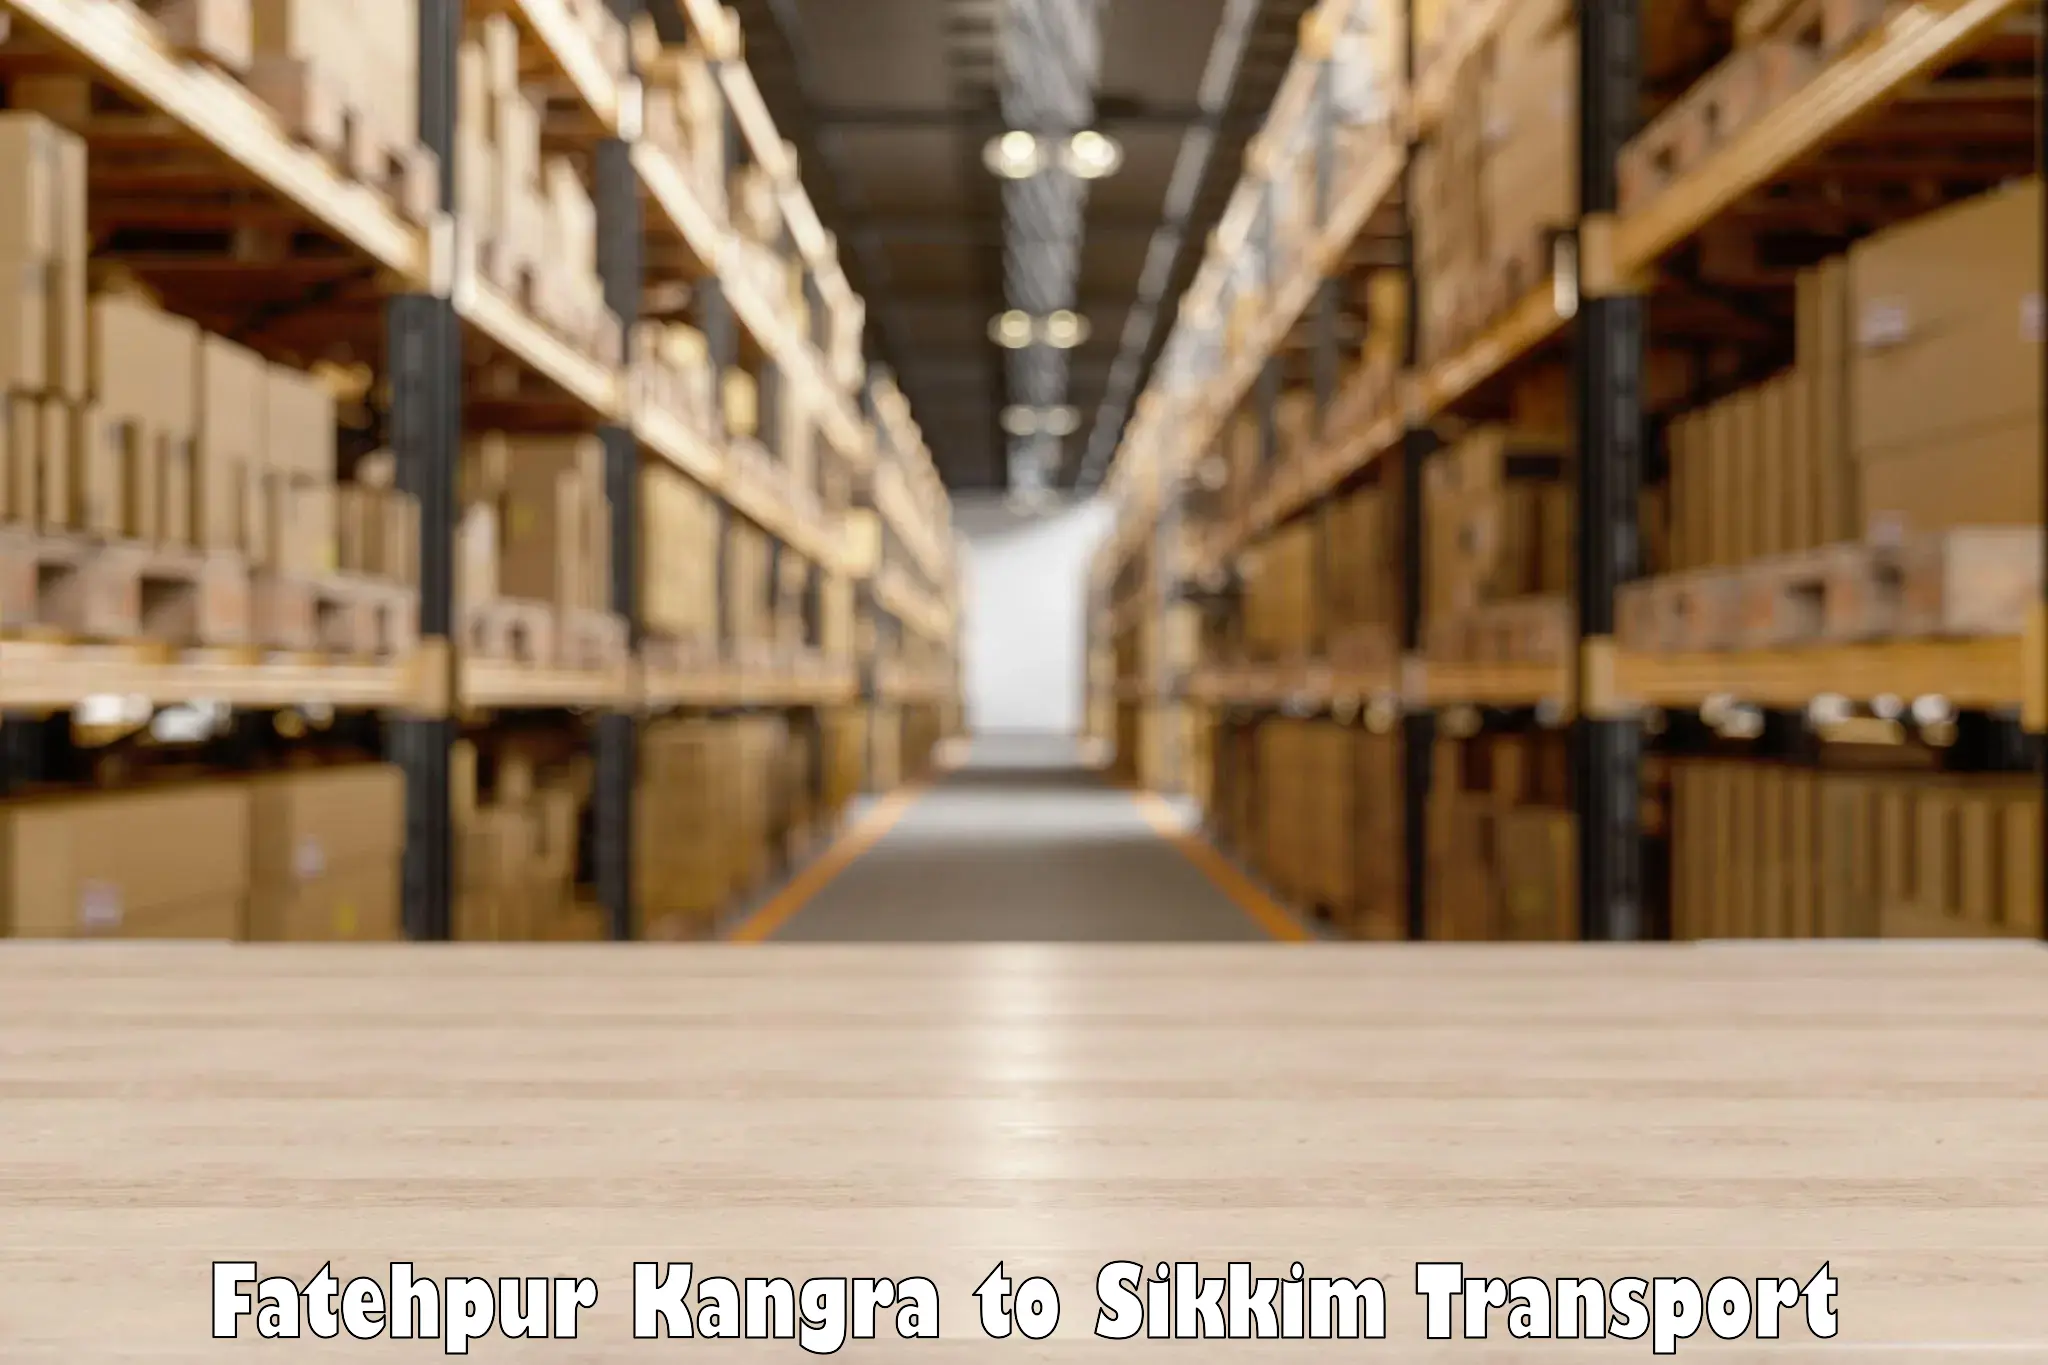 Transport in sharing Fatehpur Kangra to Mangan